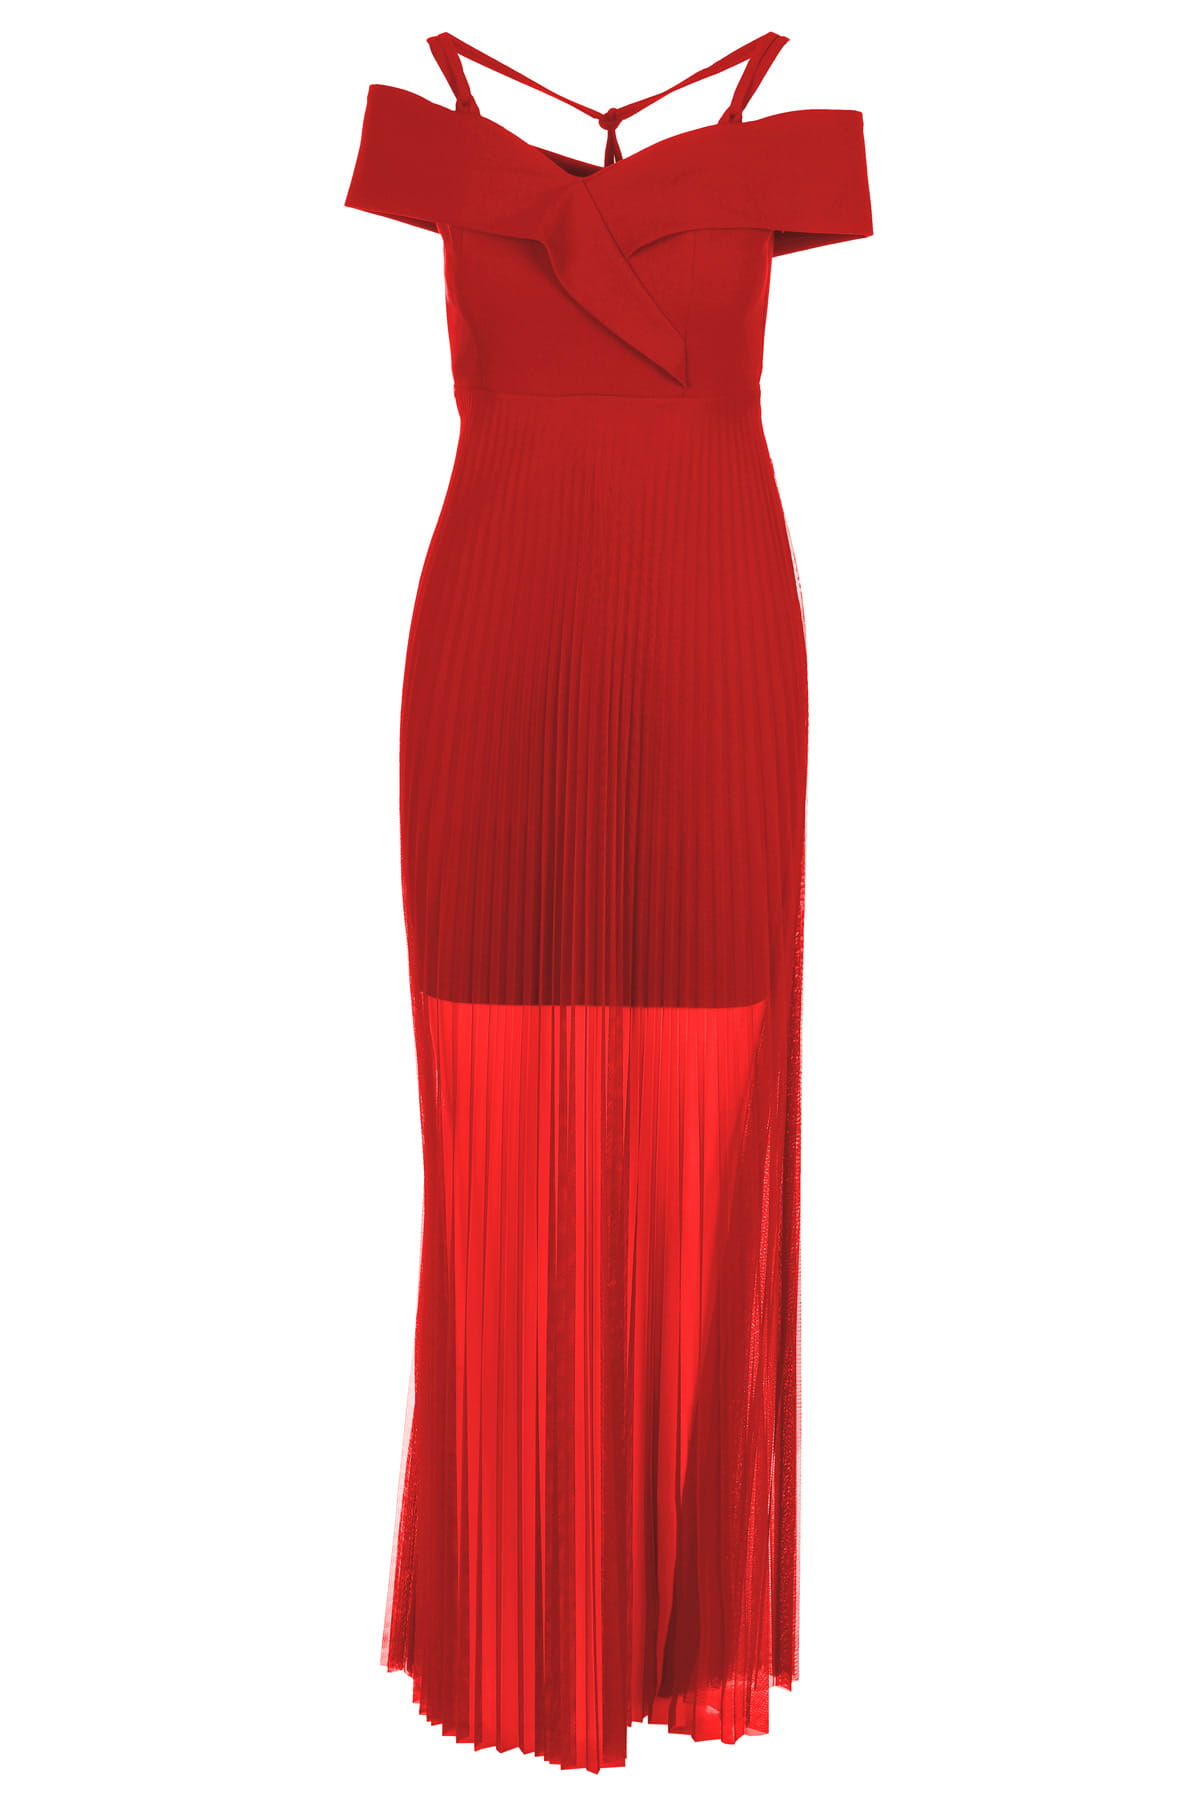 Sukienka na ramiączka, maxi, plisowana, czerwona